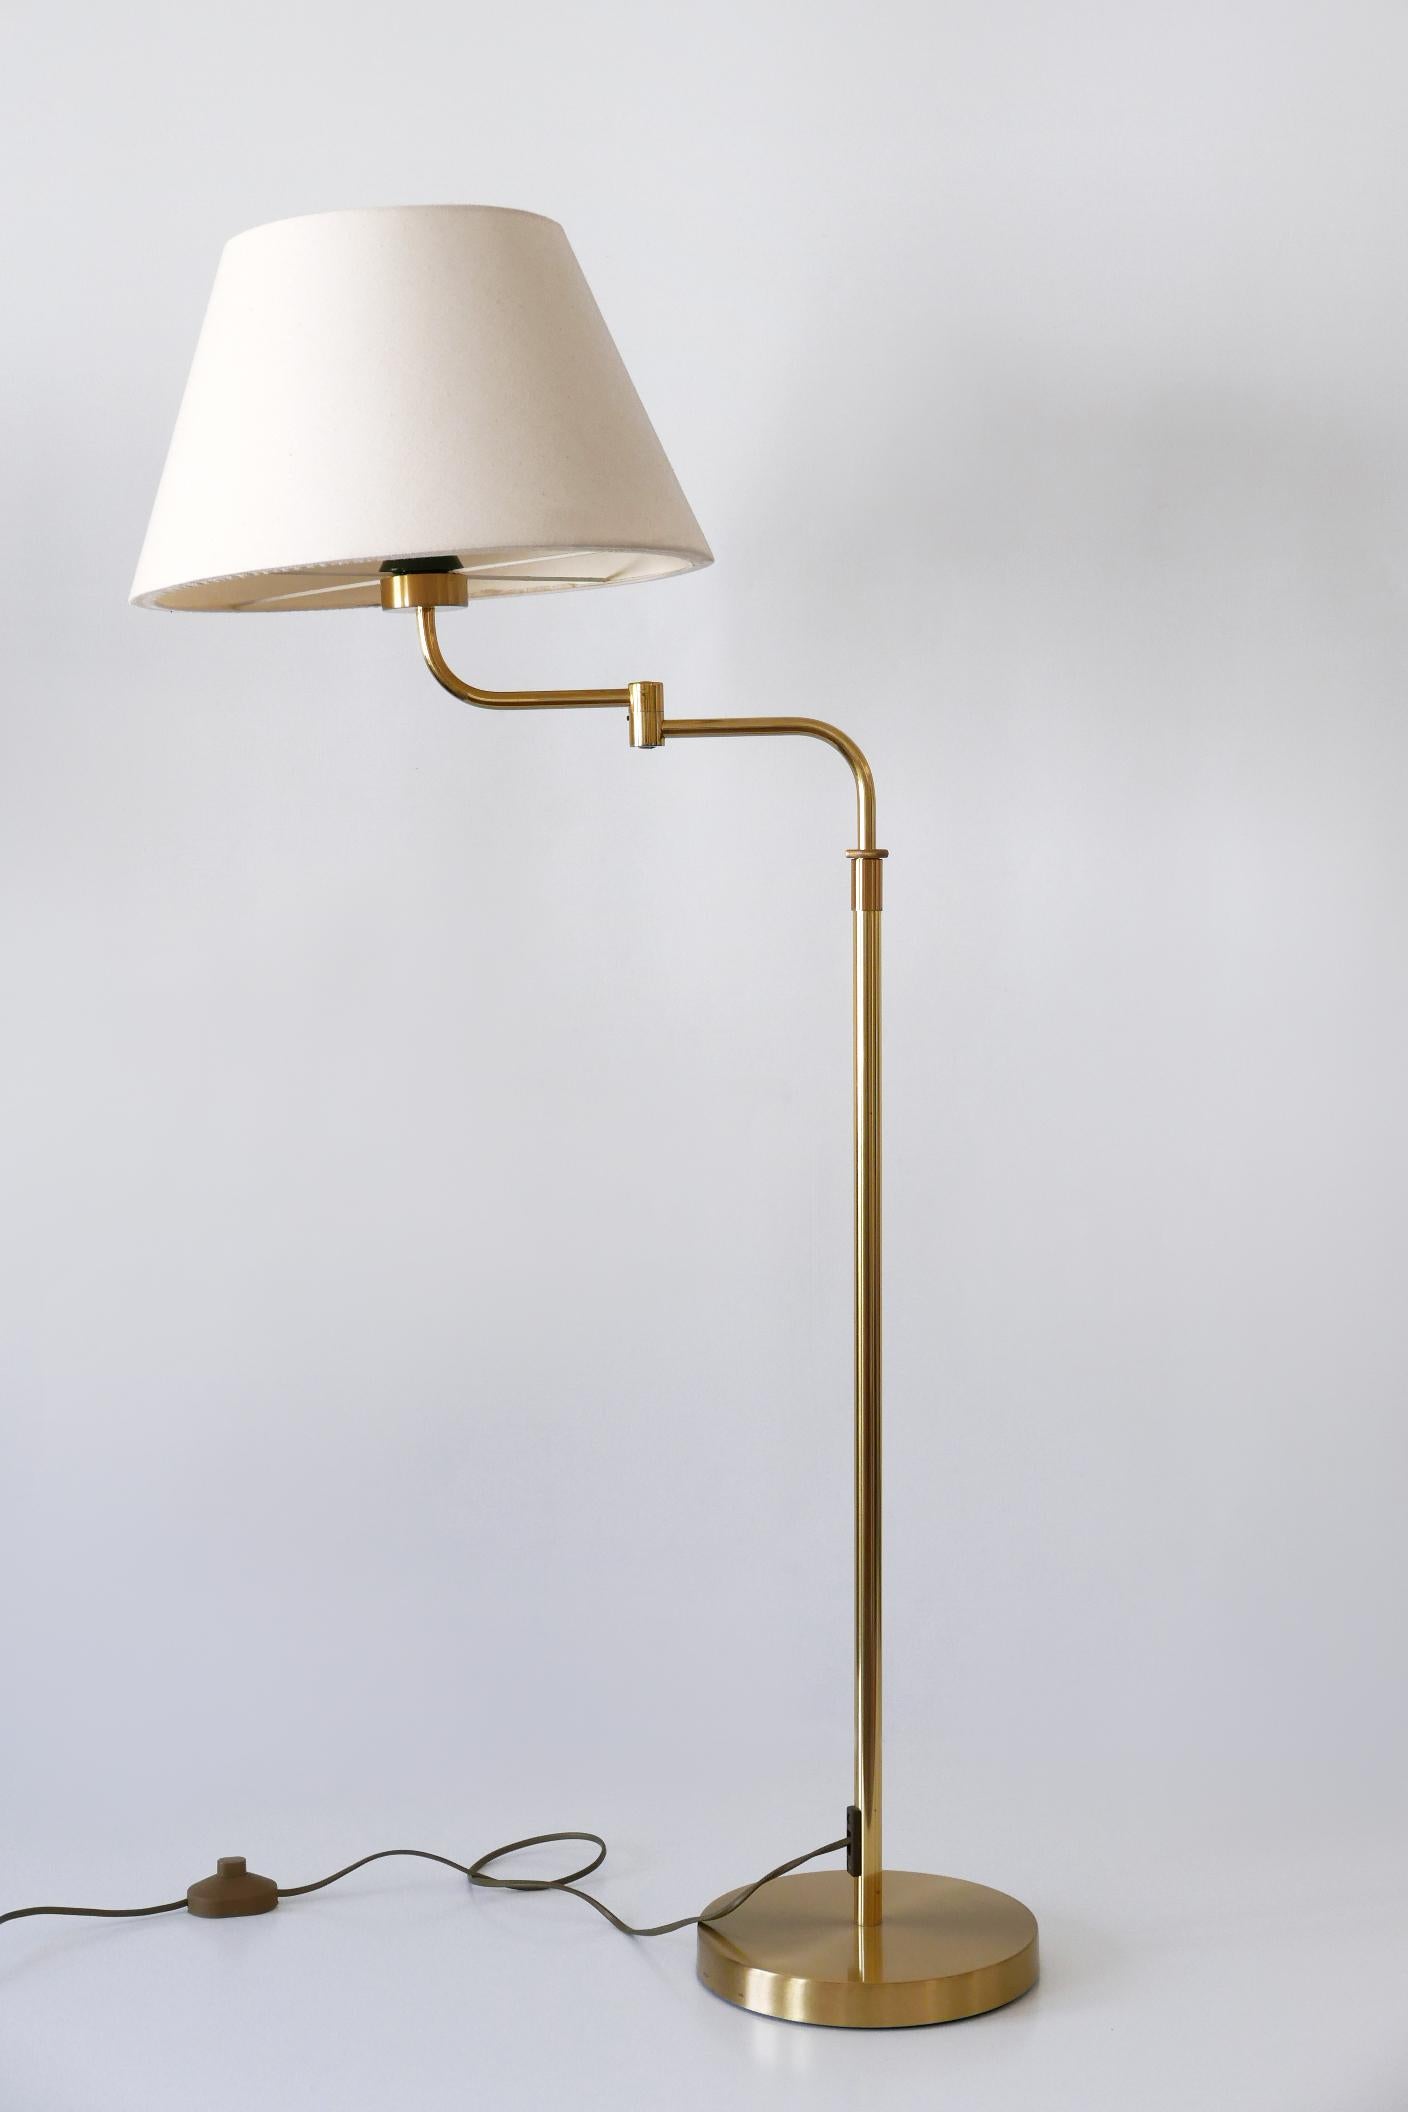 Adjustable Vintage Floor Lamp or Reading Light by Sölken Leuchten Germany 1980s For Sale 10